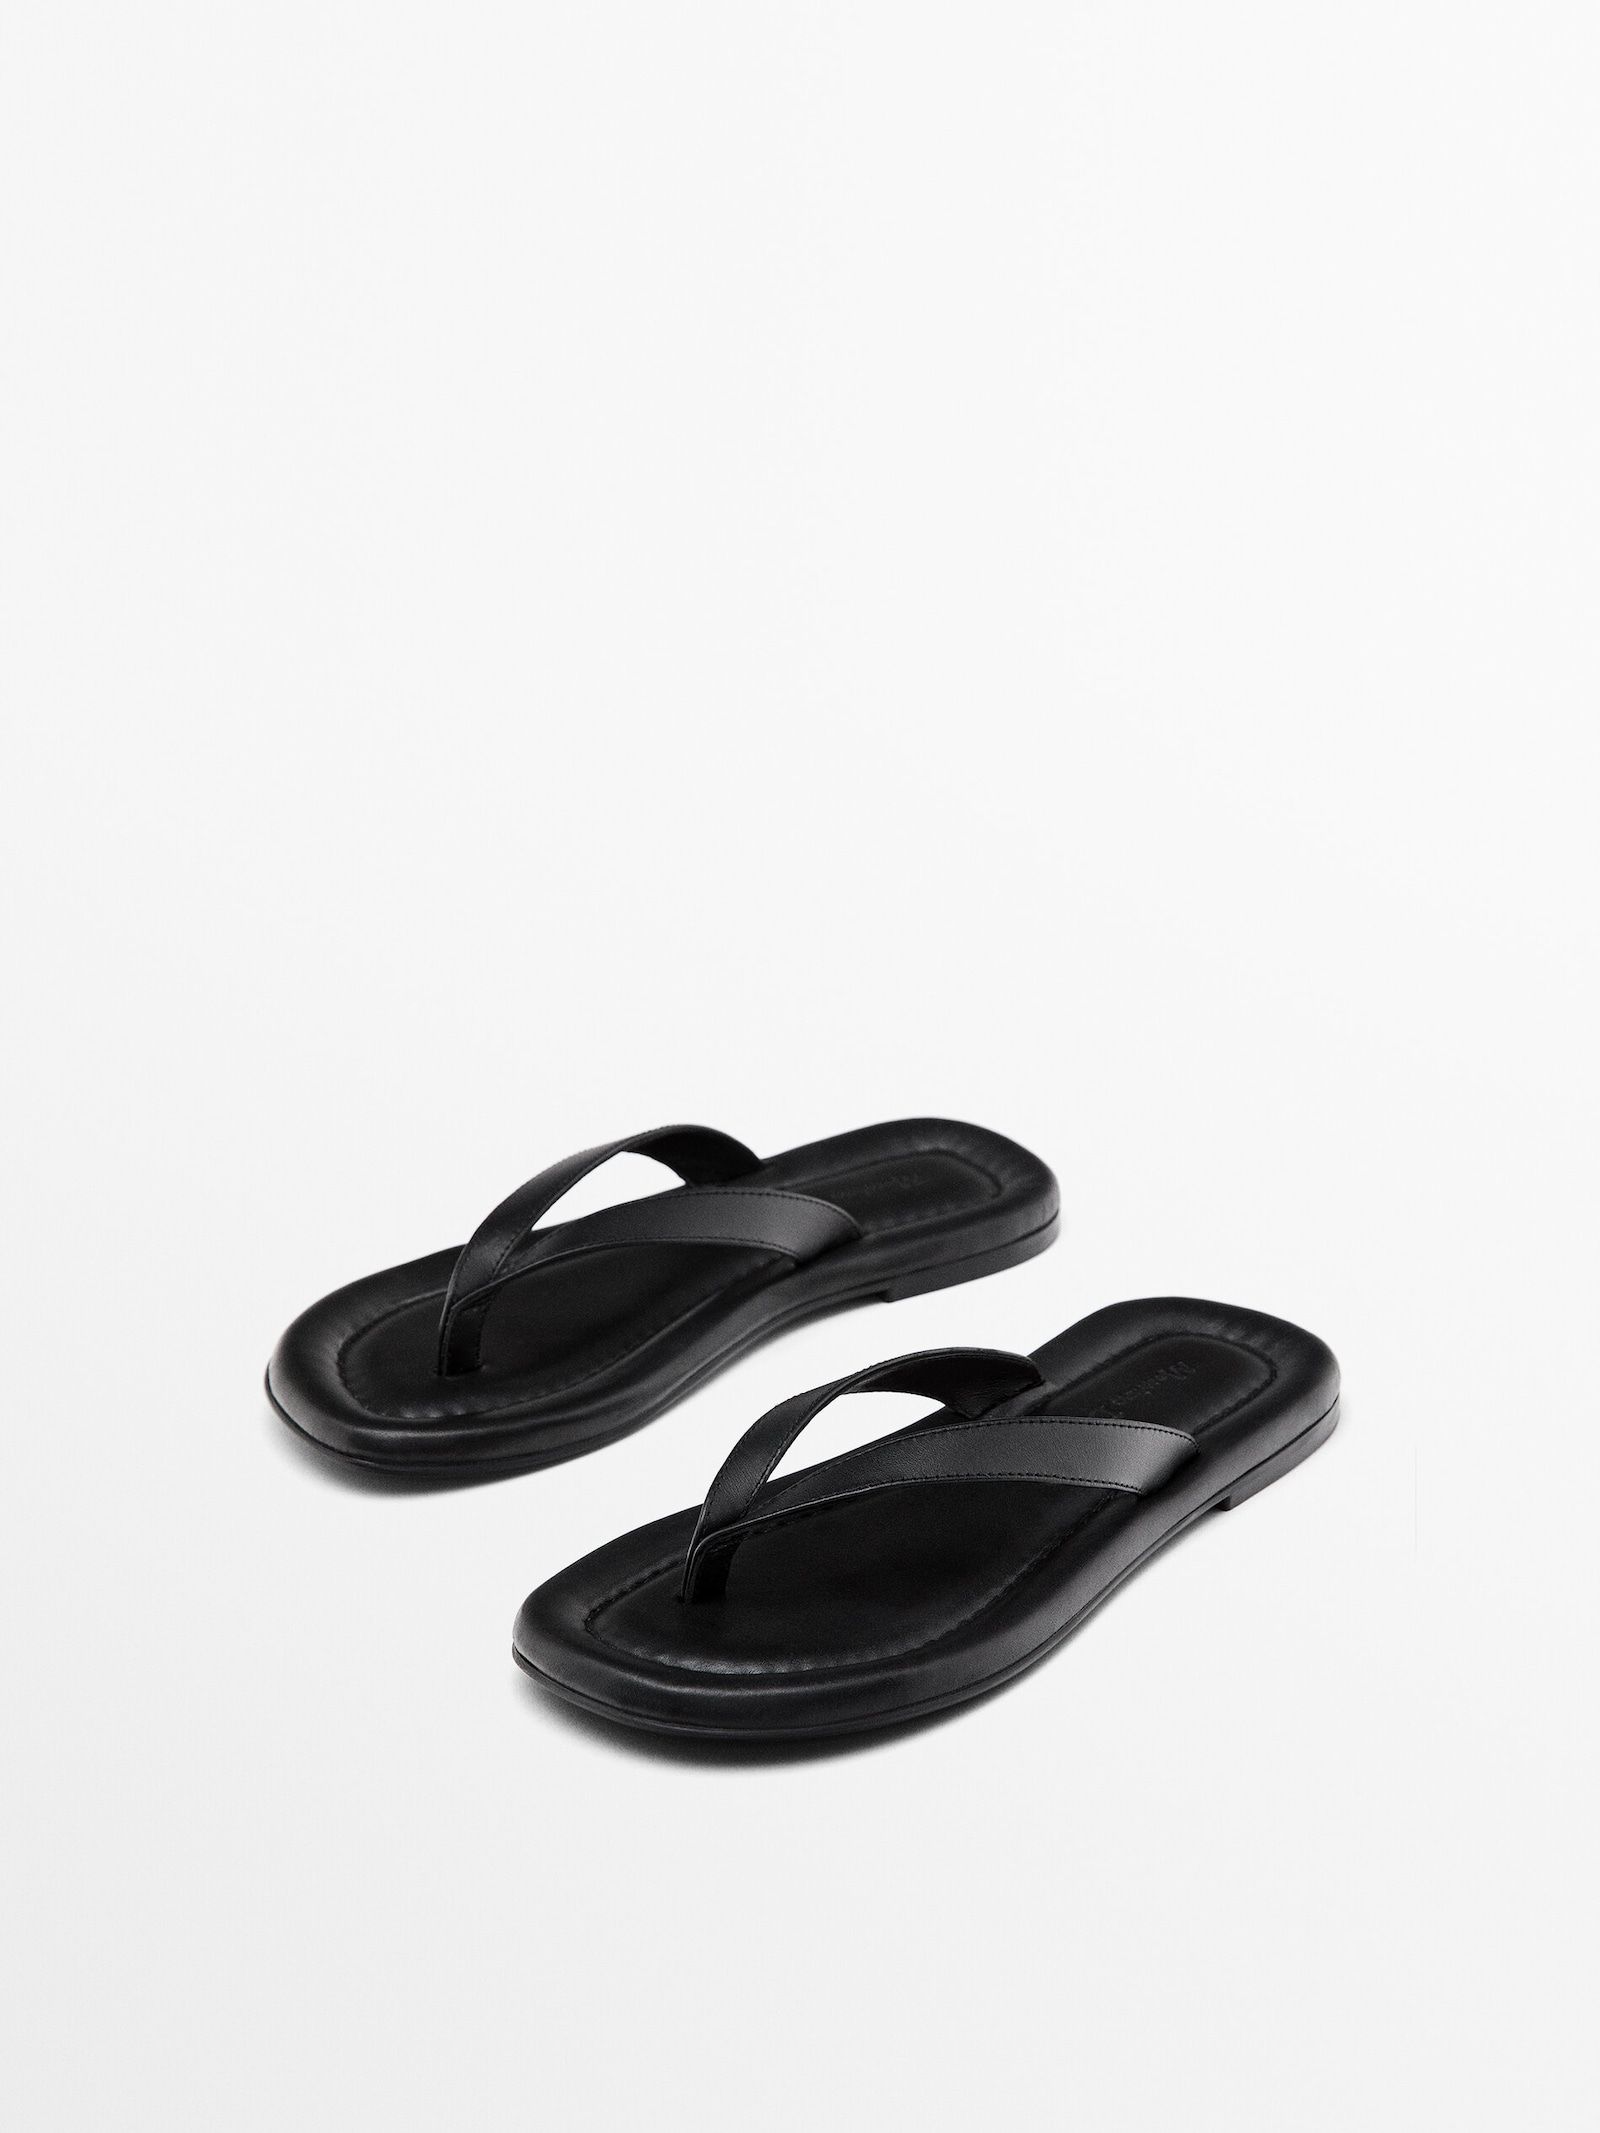 Padded flat sandals | Massimo Dutti UK